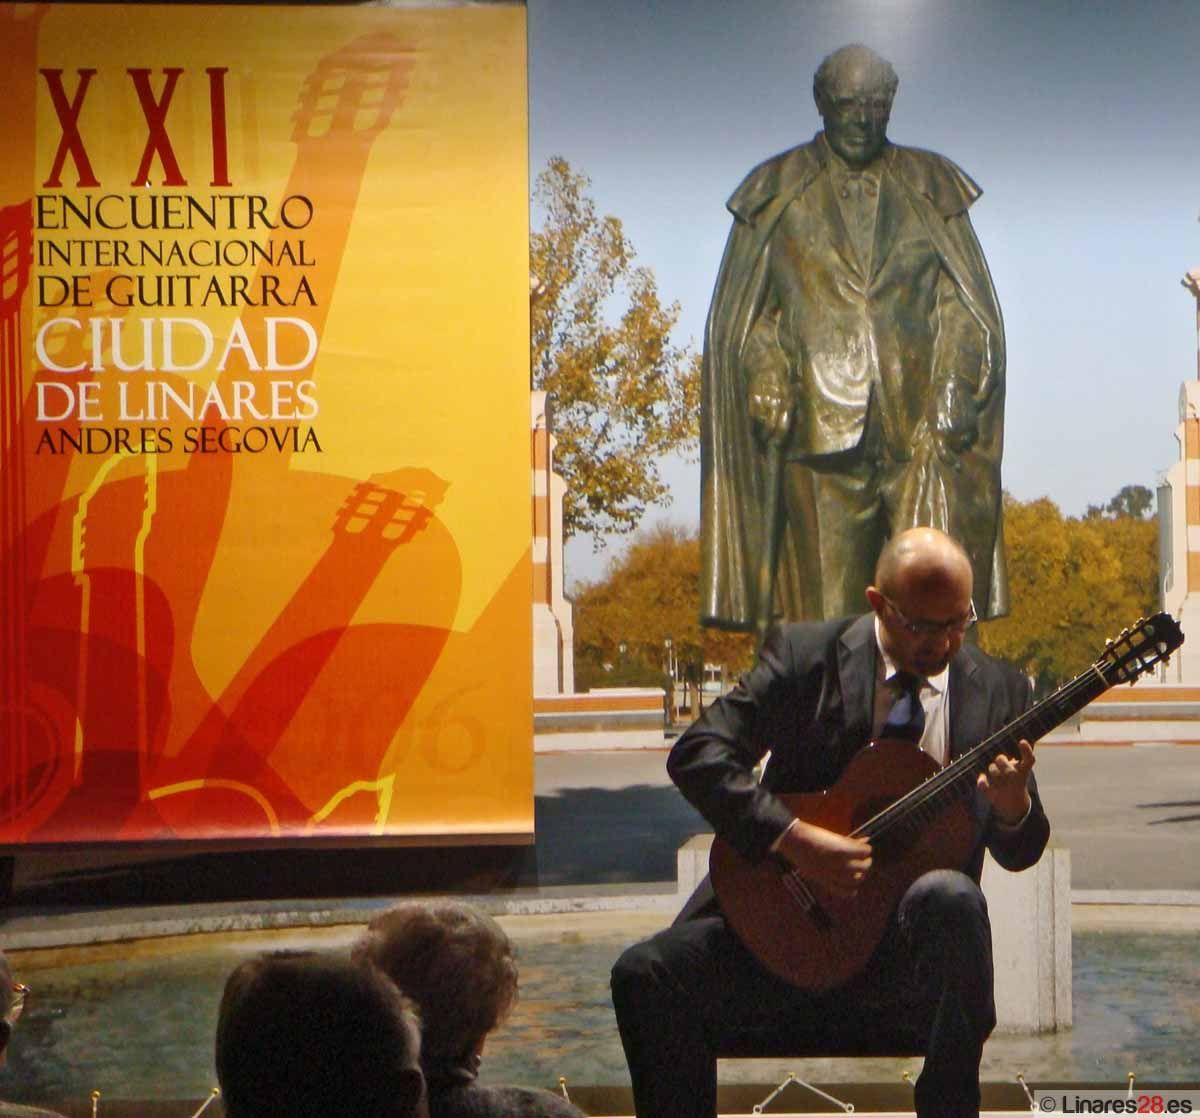 El Guitarrista napolitano Ciro Carbone interpretó música de su tierra en la Casa-Museo “Andrés Segovia”